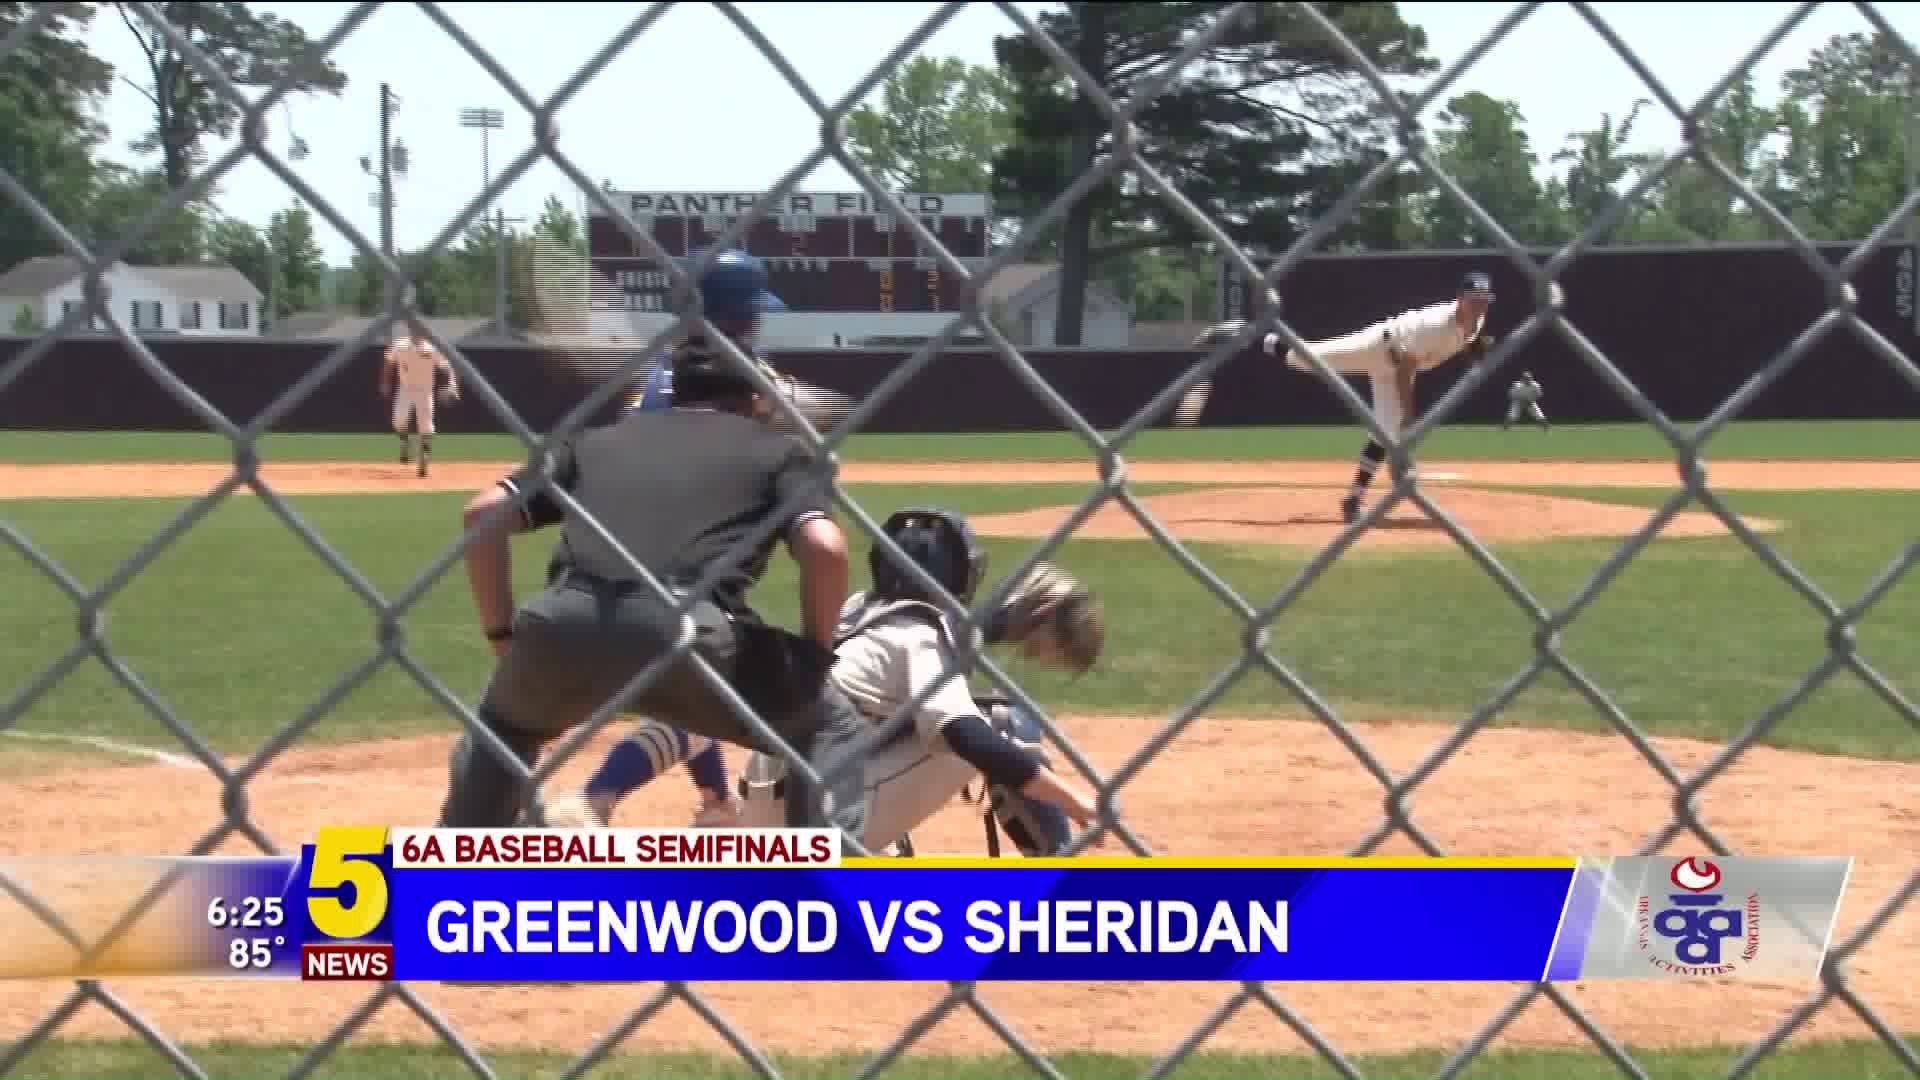 6A Baseball Semifinals: Greenwood vs Sheridan